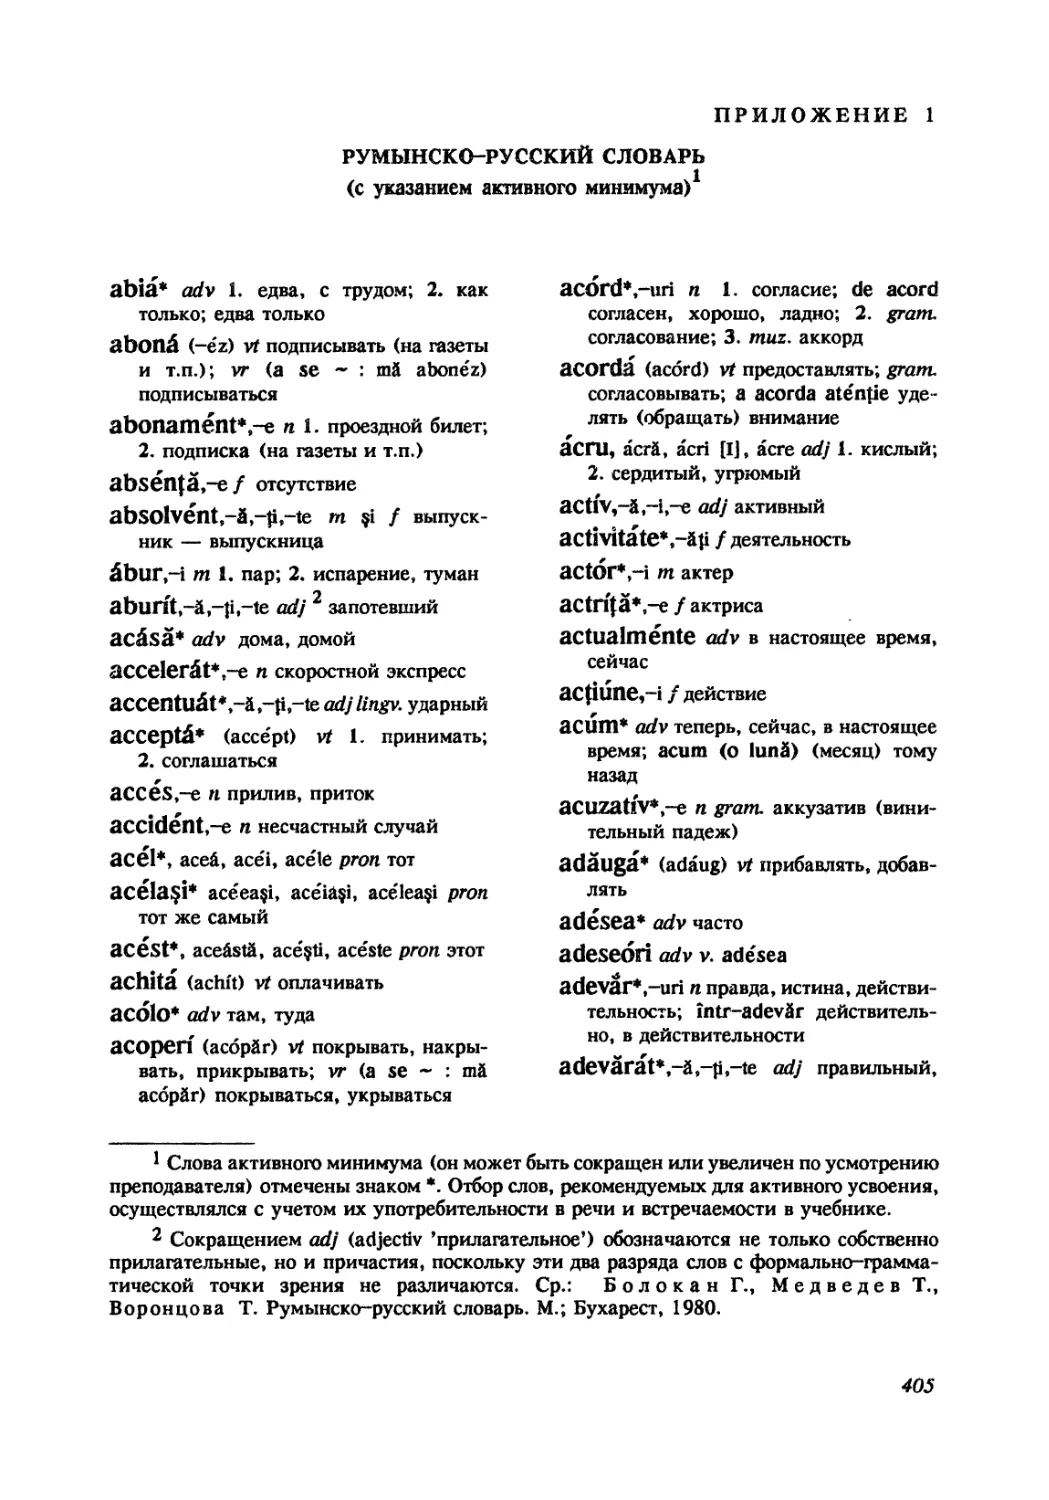 Румынско-русский словарь